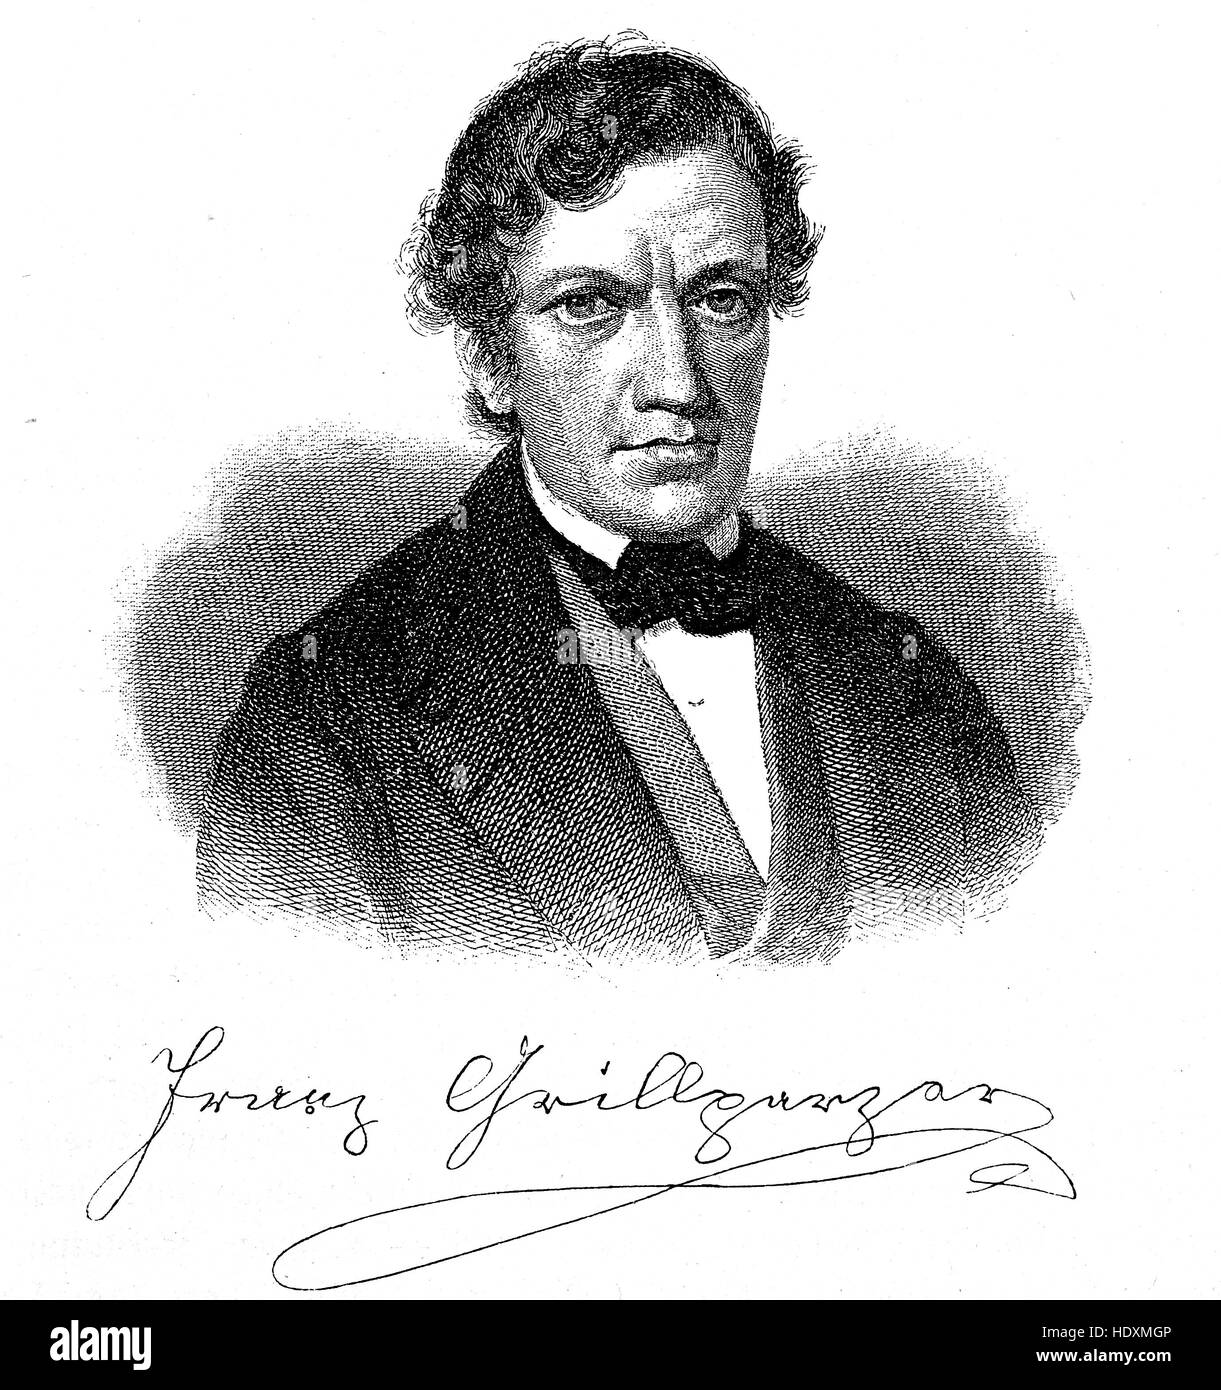 Franz Seraphicus Grillparzer, 1791-1872, un écrivain autrichien , gravure sur bois à partir de l'année 1882, l'amélioration numérique Banque D'Images